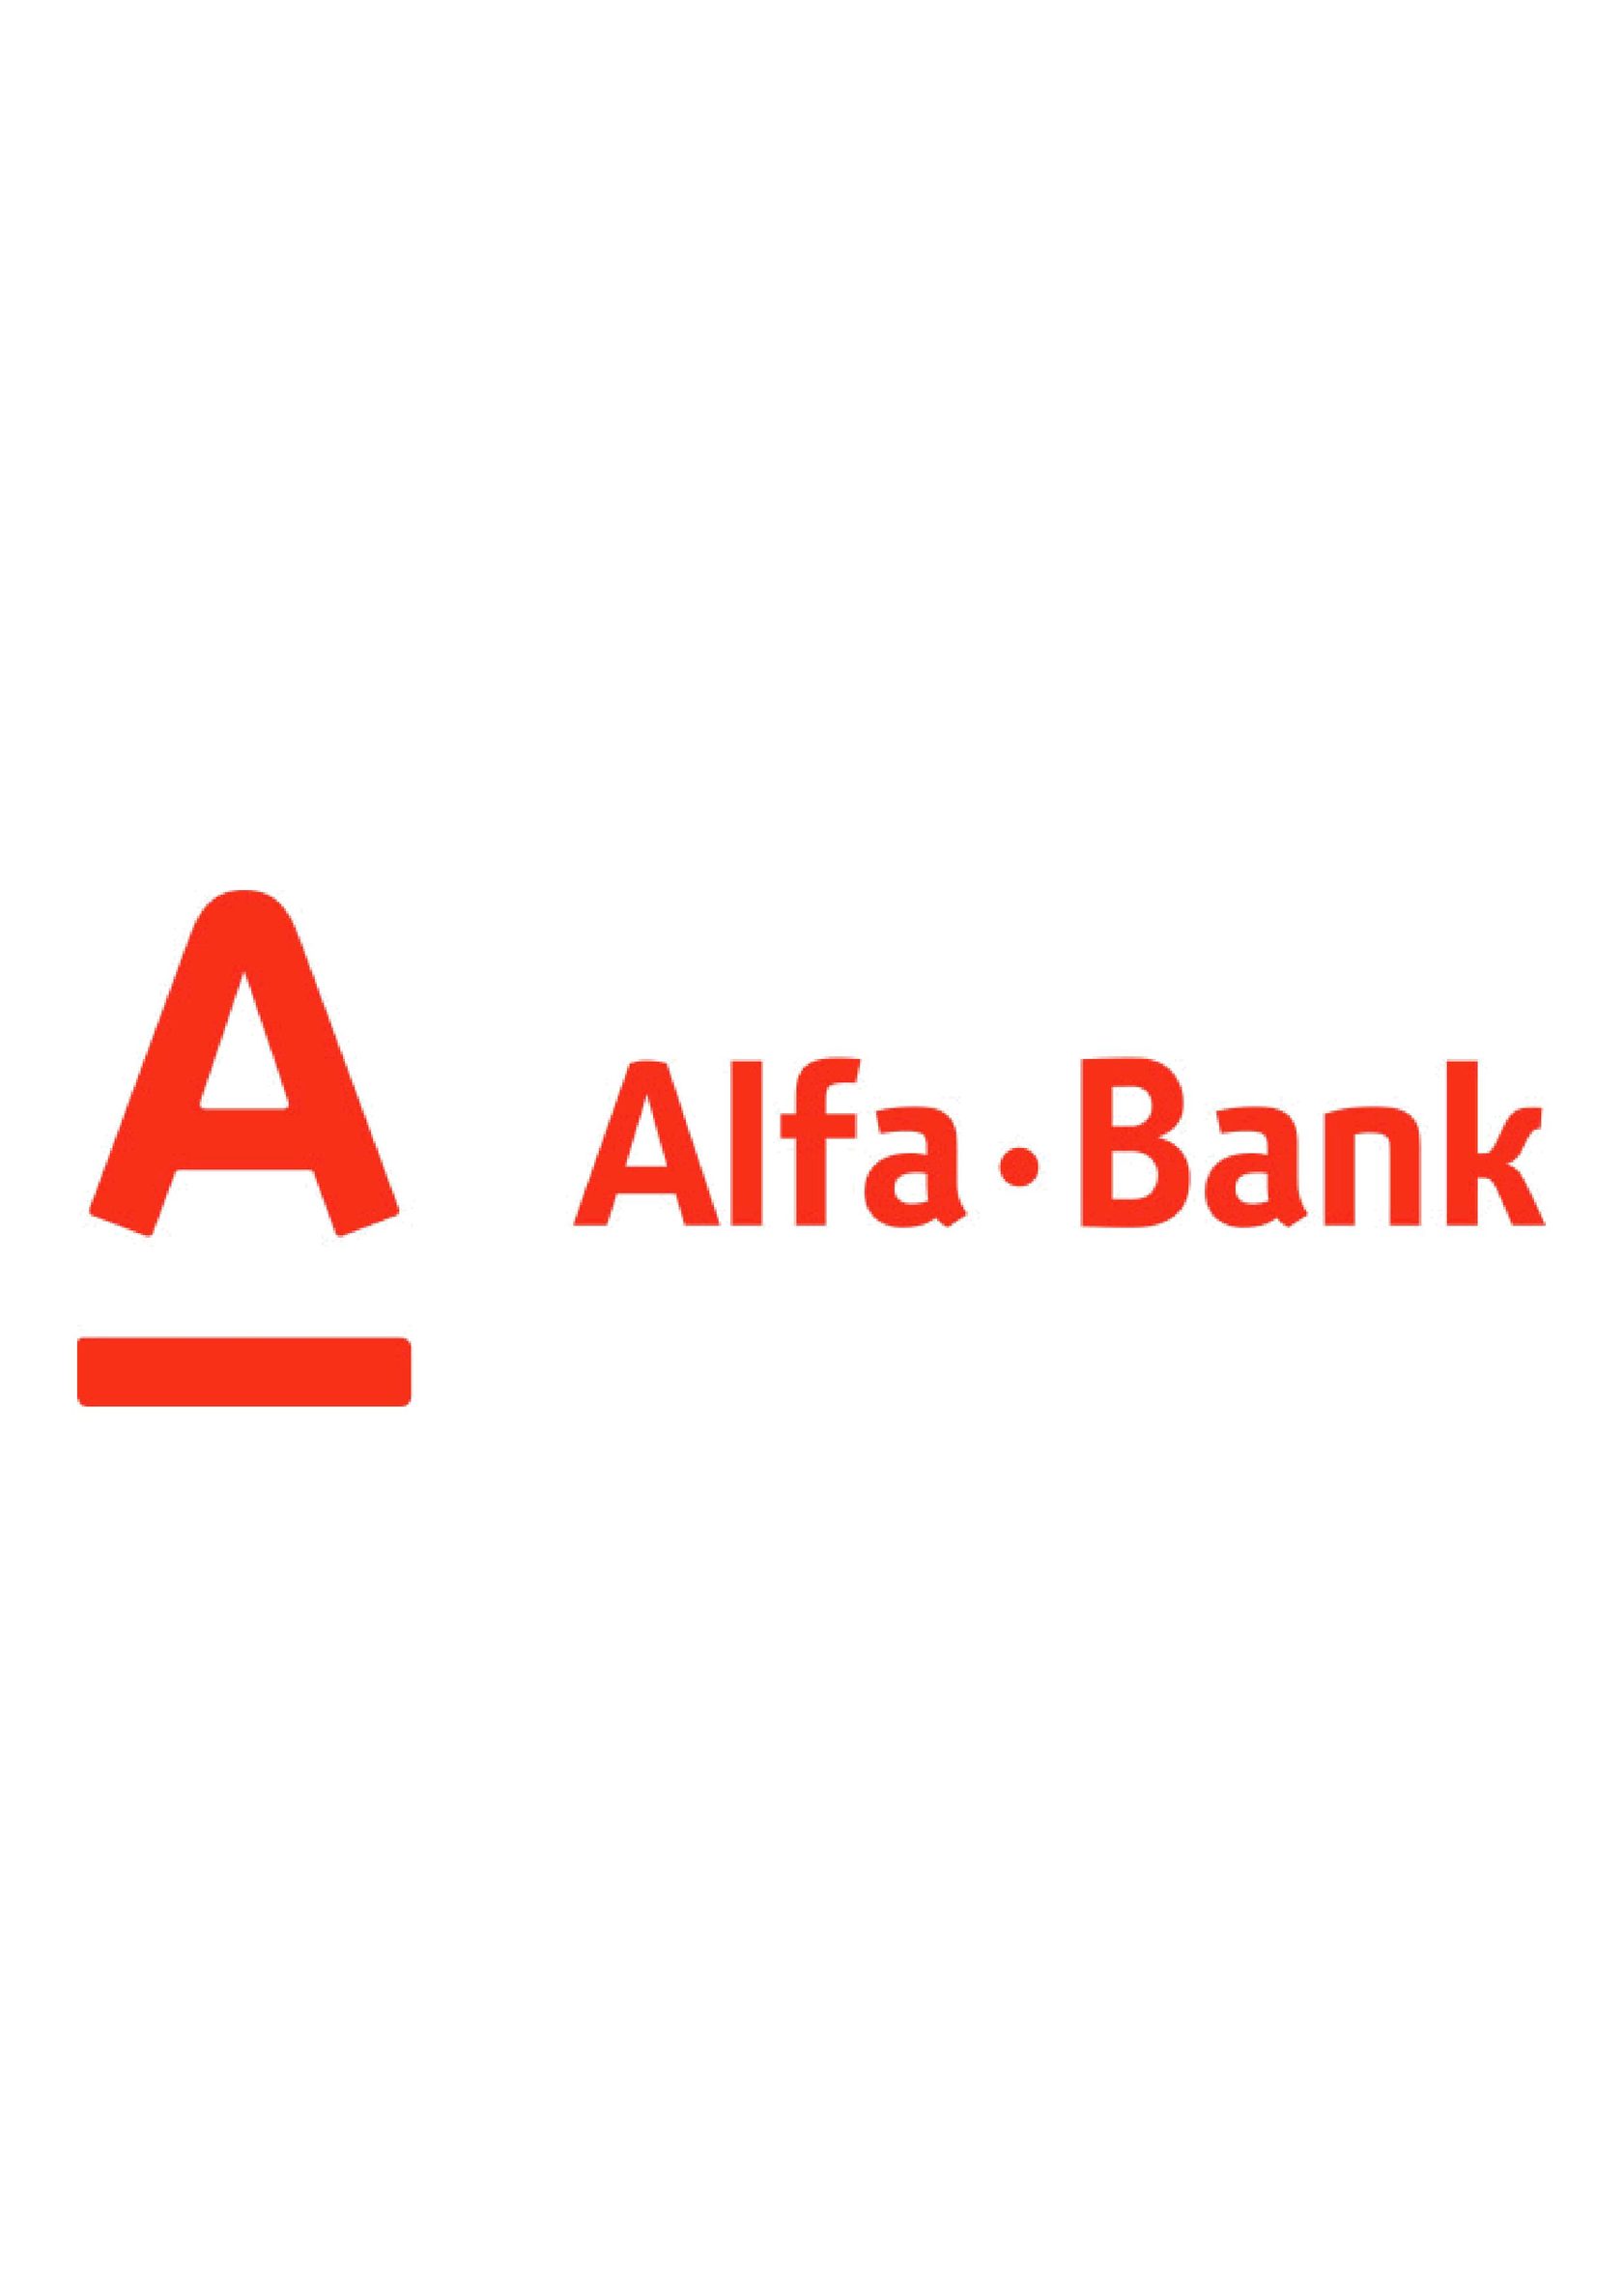 Альфа банк полностью. Альфа банк. Логотип Альфа банка. Альфа банк логотип без фона. Логотип Альфа банка 2021.